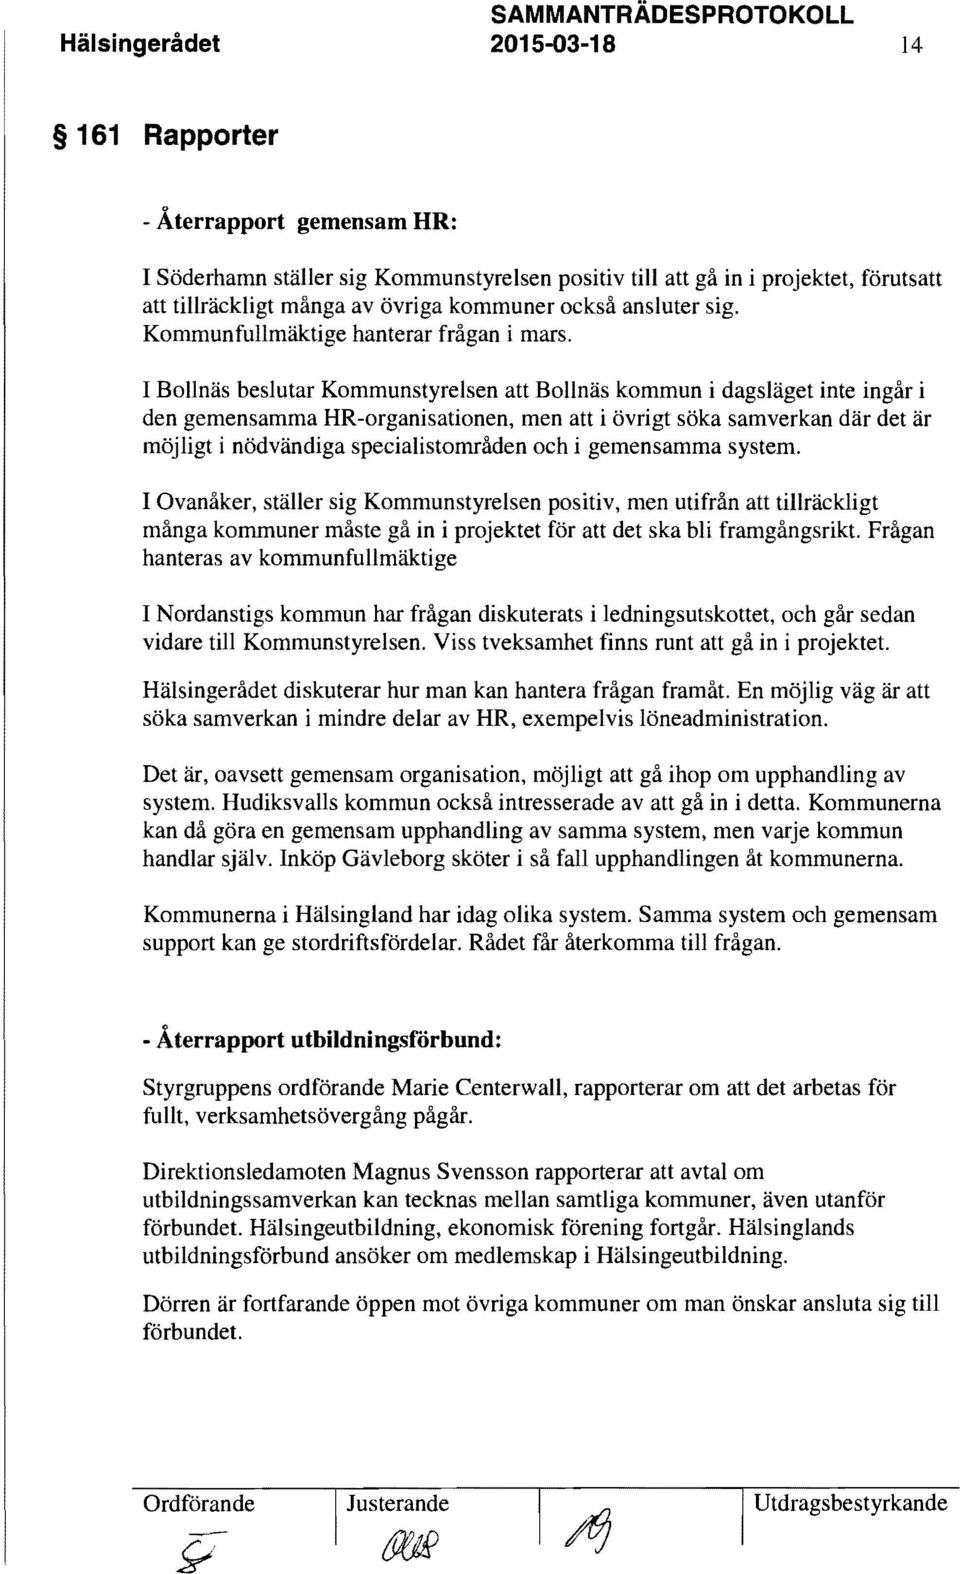 I Bollnäs beslutar Kommunstyrelsen att Bollnäs kommun i dagsläget inte ingår i den gemensamma HR-organisationen, men att i övrigt söka samverkan där det är möjligt i nödvändiga specialistområden och